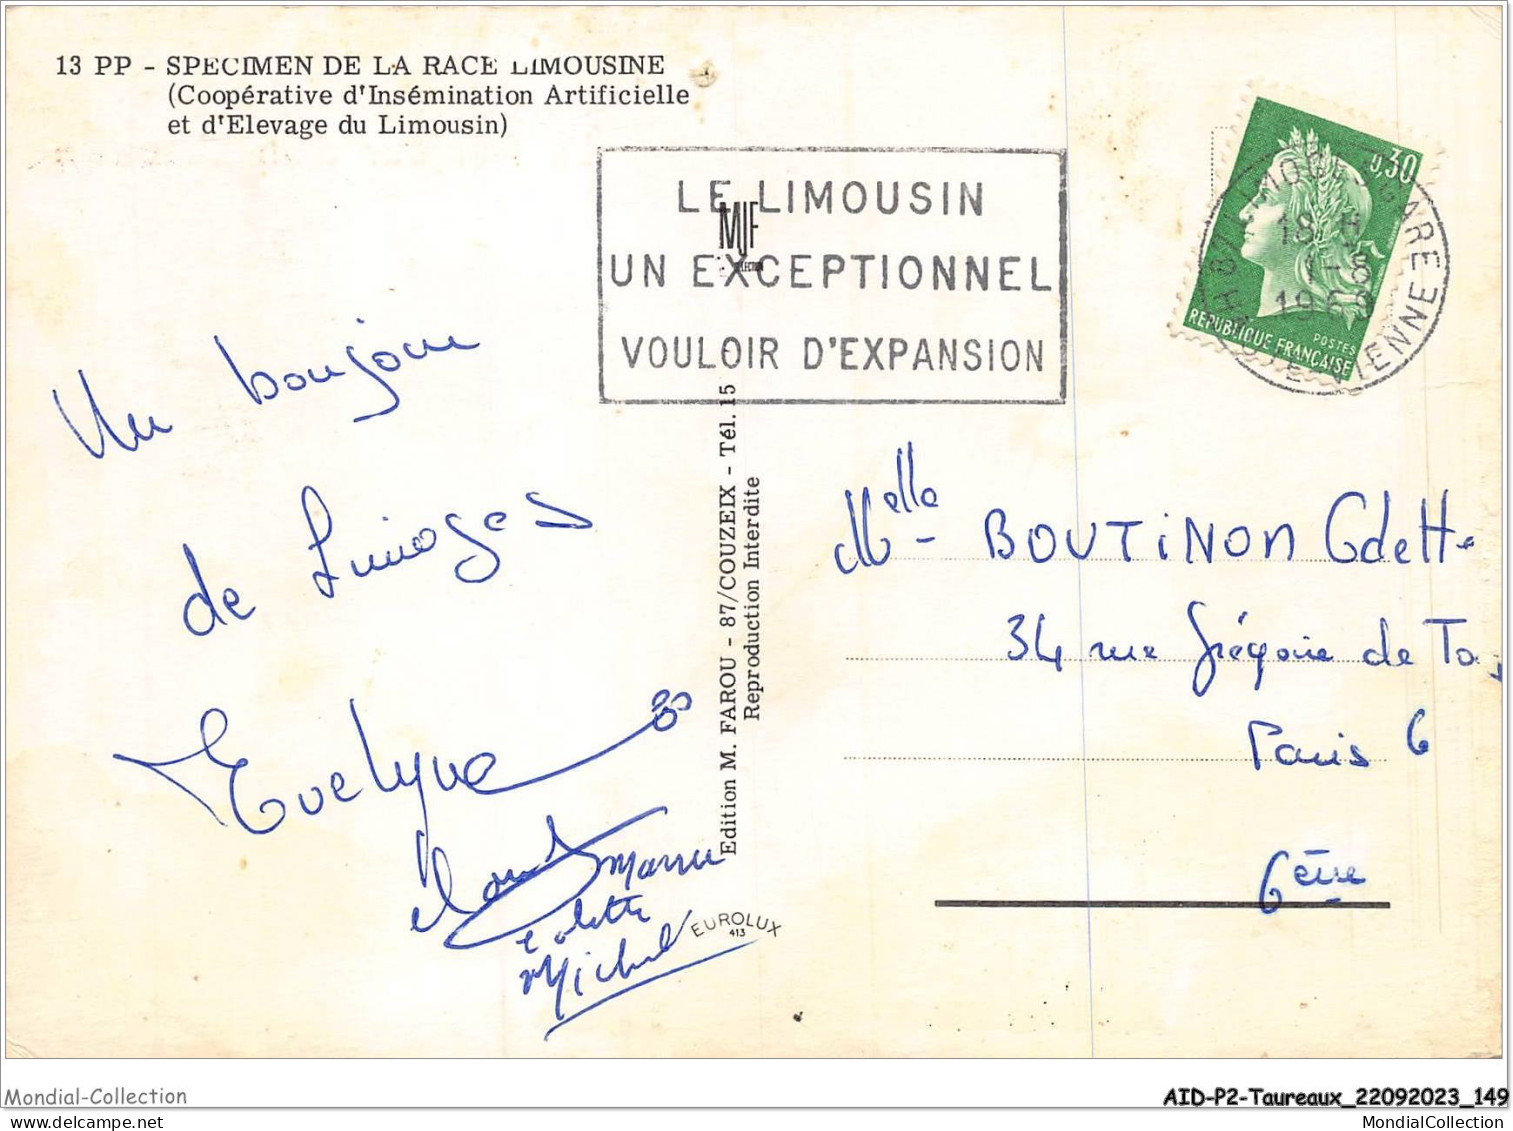 AIDP2-TAUREAUX-0148 - Le Bonjour D'un Limousin  - Taureaux